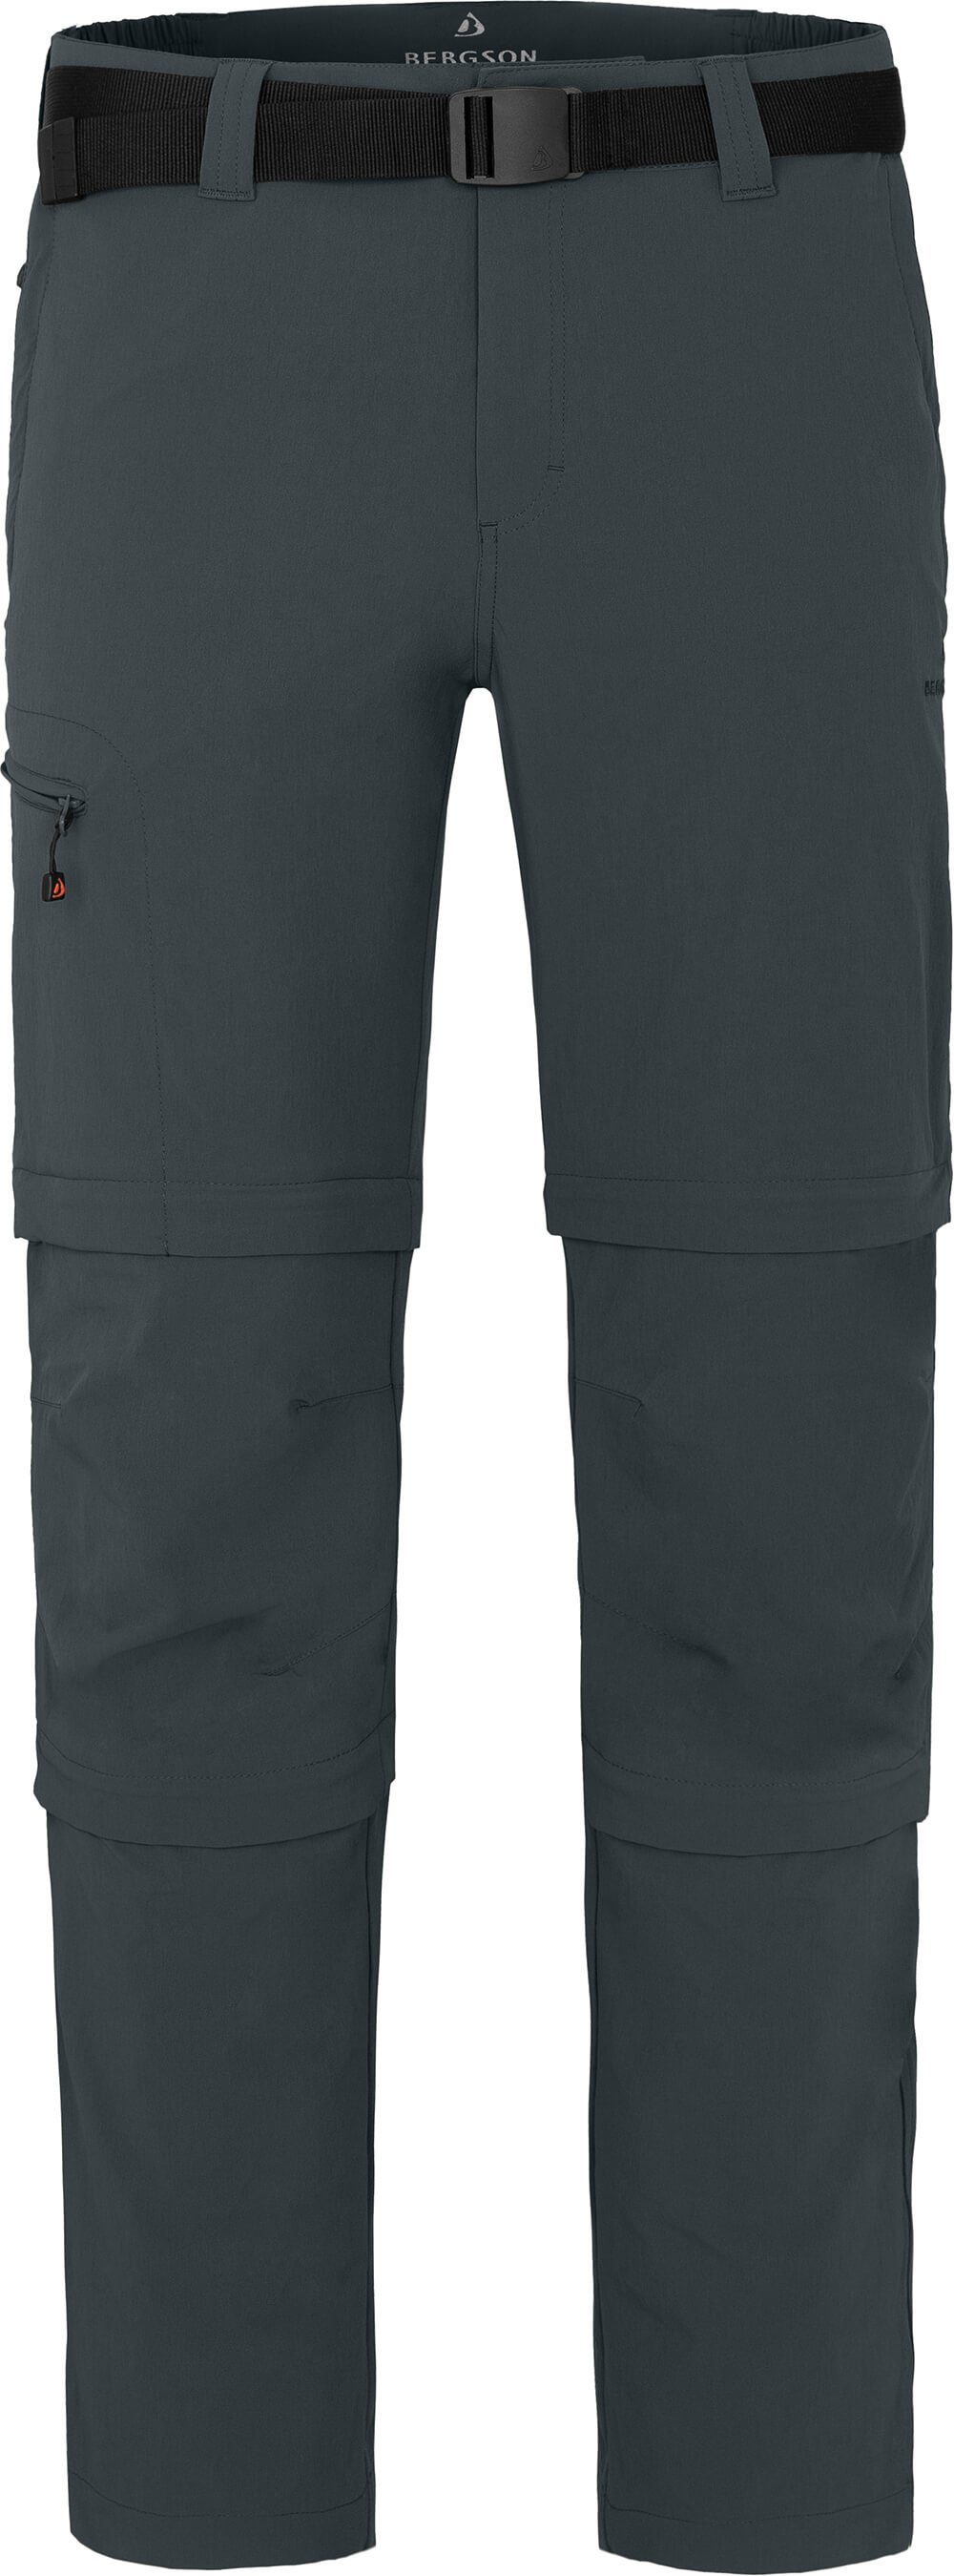 Bergson Zip-off-Hose OSSA Doppel Zipp-Off Herren Wanderhose, vielseitig, pflegeleicht, Normalgrößen, dunkel grau